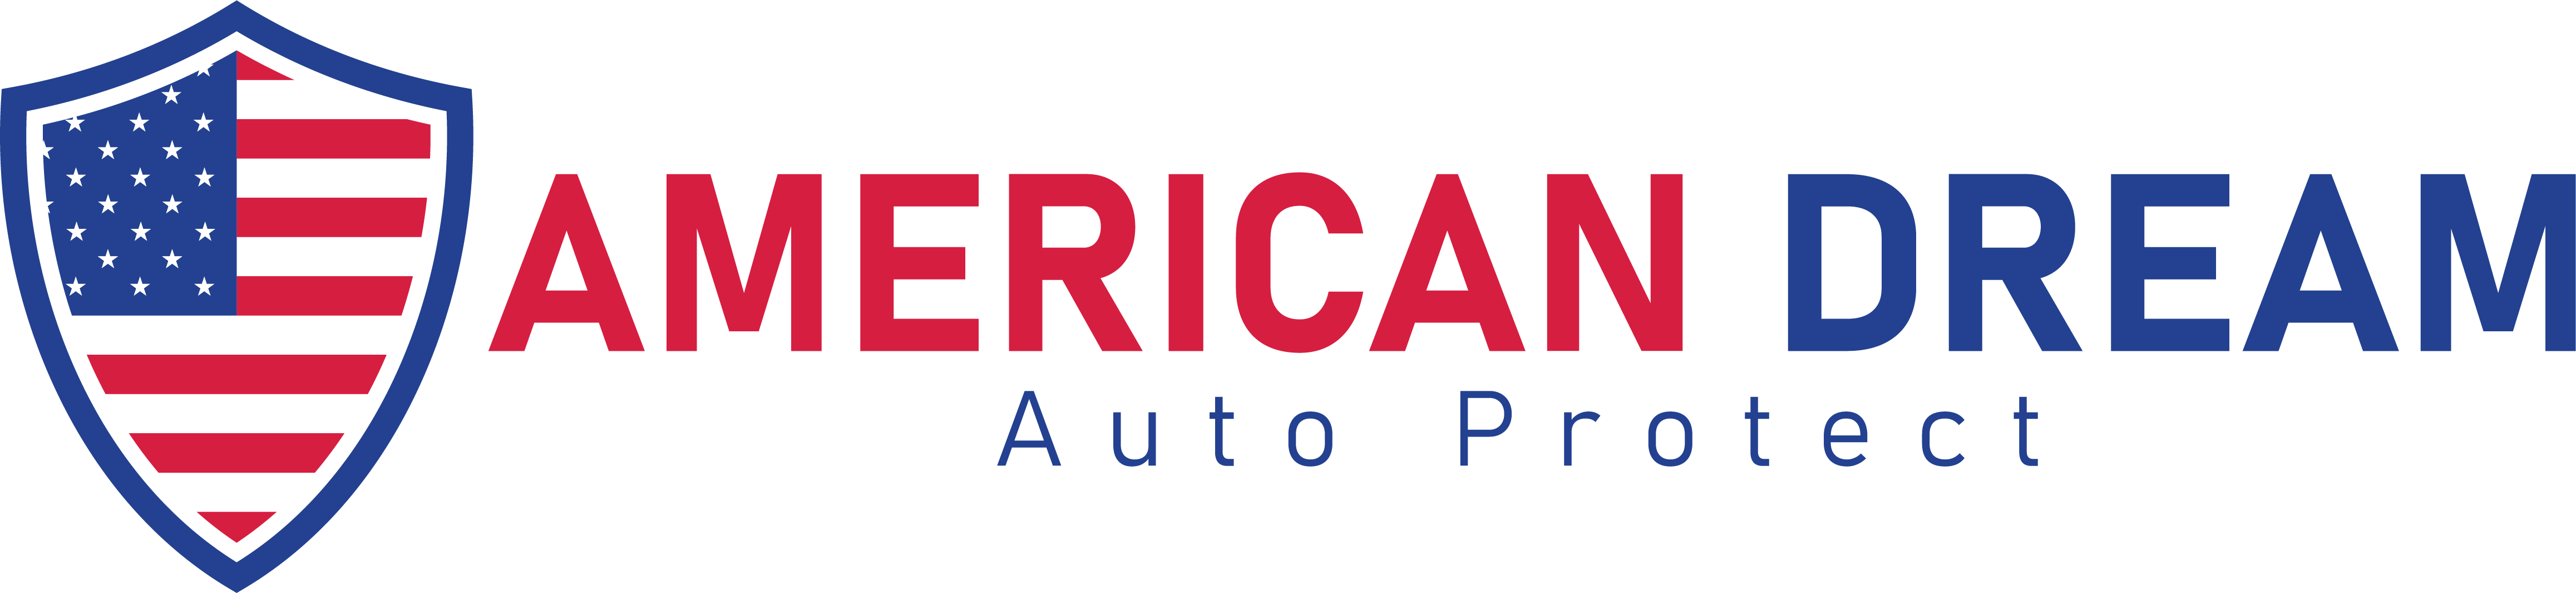 American Dream Auto Protect Logo